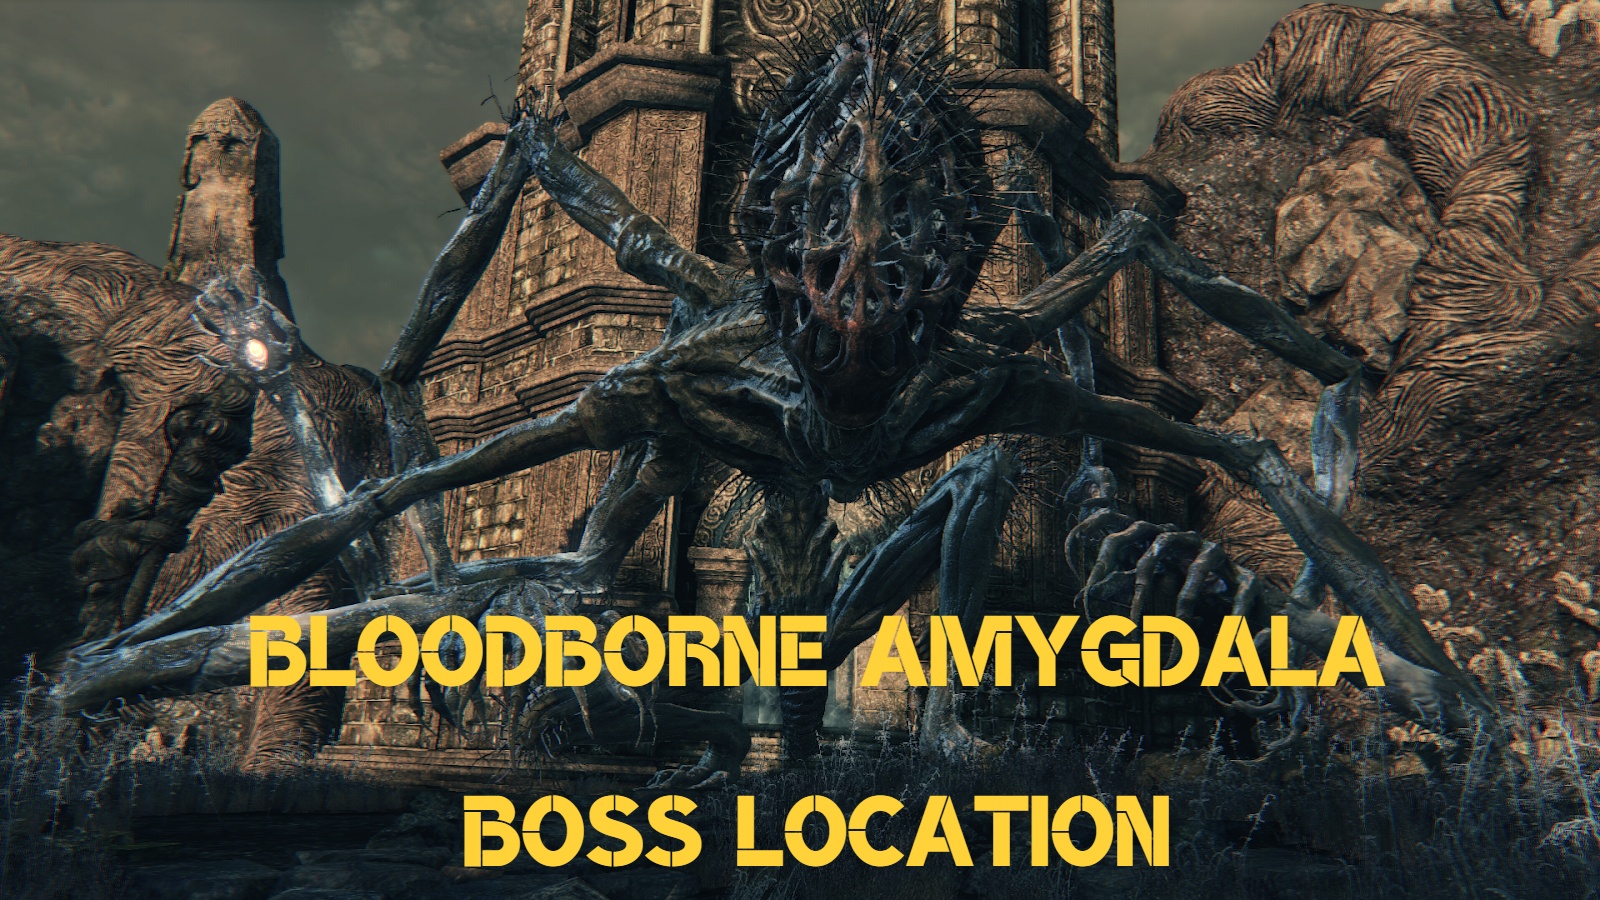 røveri gevinst krøllet How To Find The Bloodborne Amygdala Boss Fight - eXputer.com